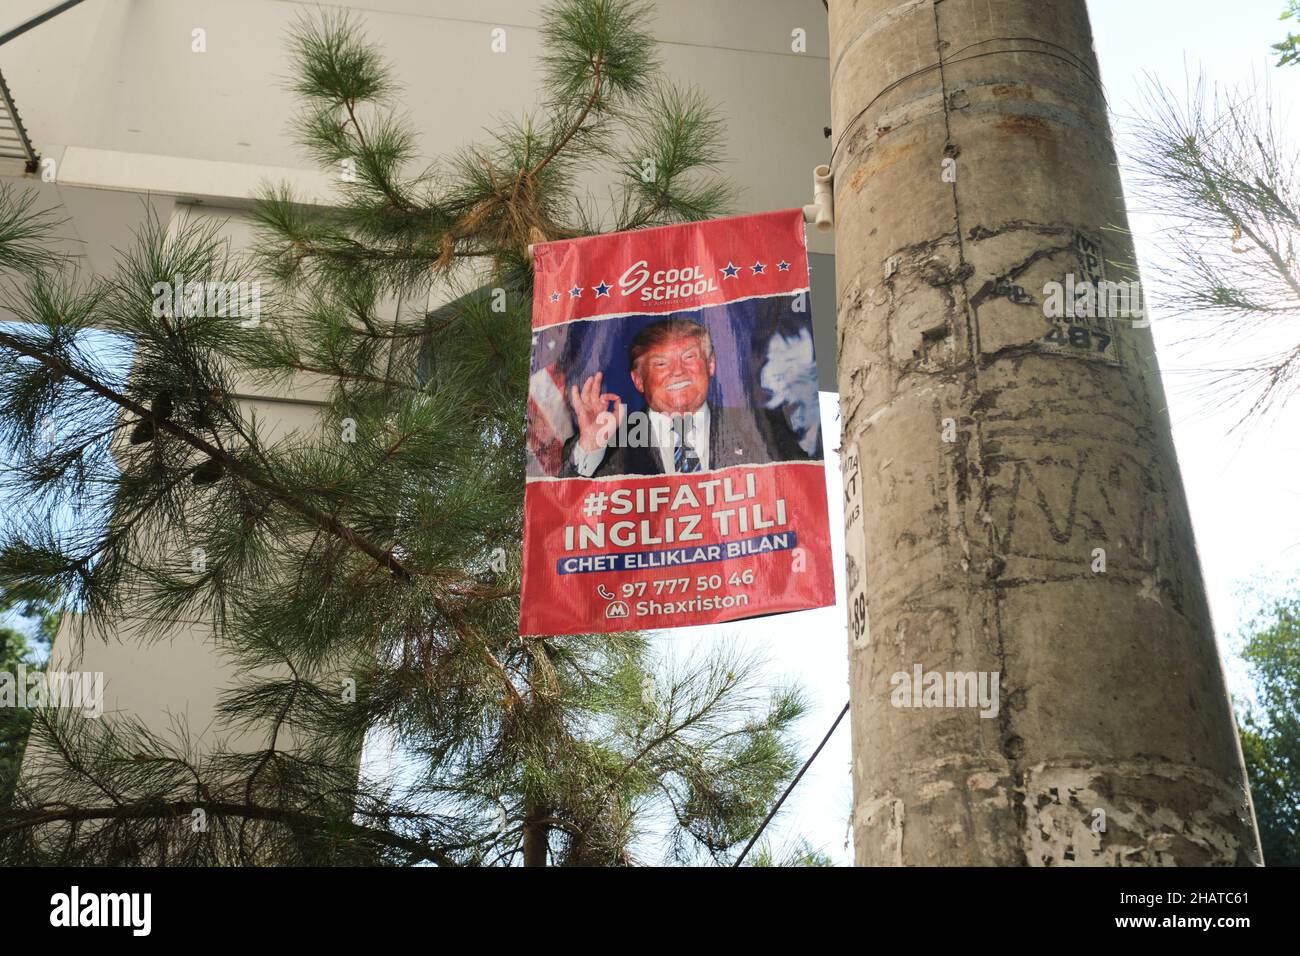 Ein Plakat, Werbung für eine englischsprachige Schule, Kurs, mit einem Bild von Donald Trump und dem OK-Zeichen. In Taschkent, Usbekistan. Stockfoto